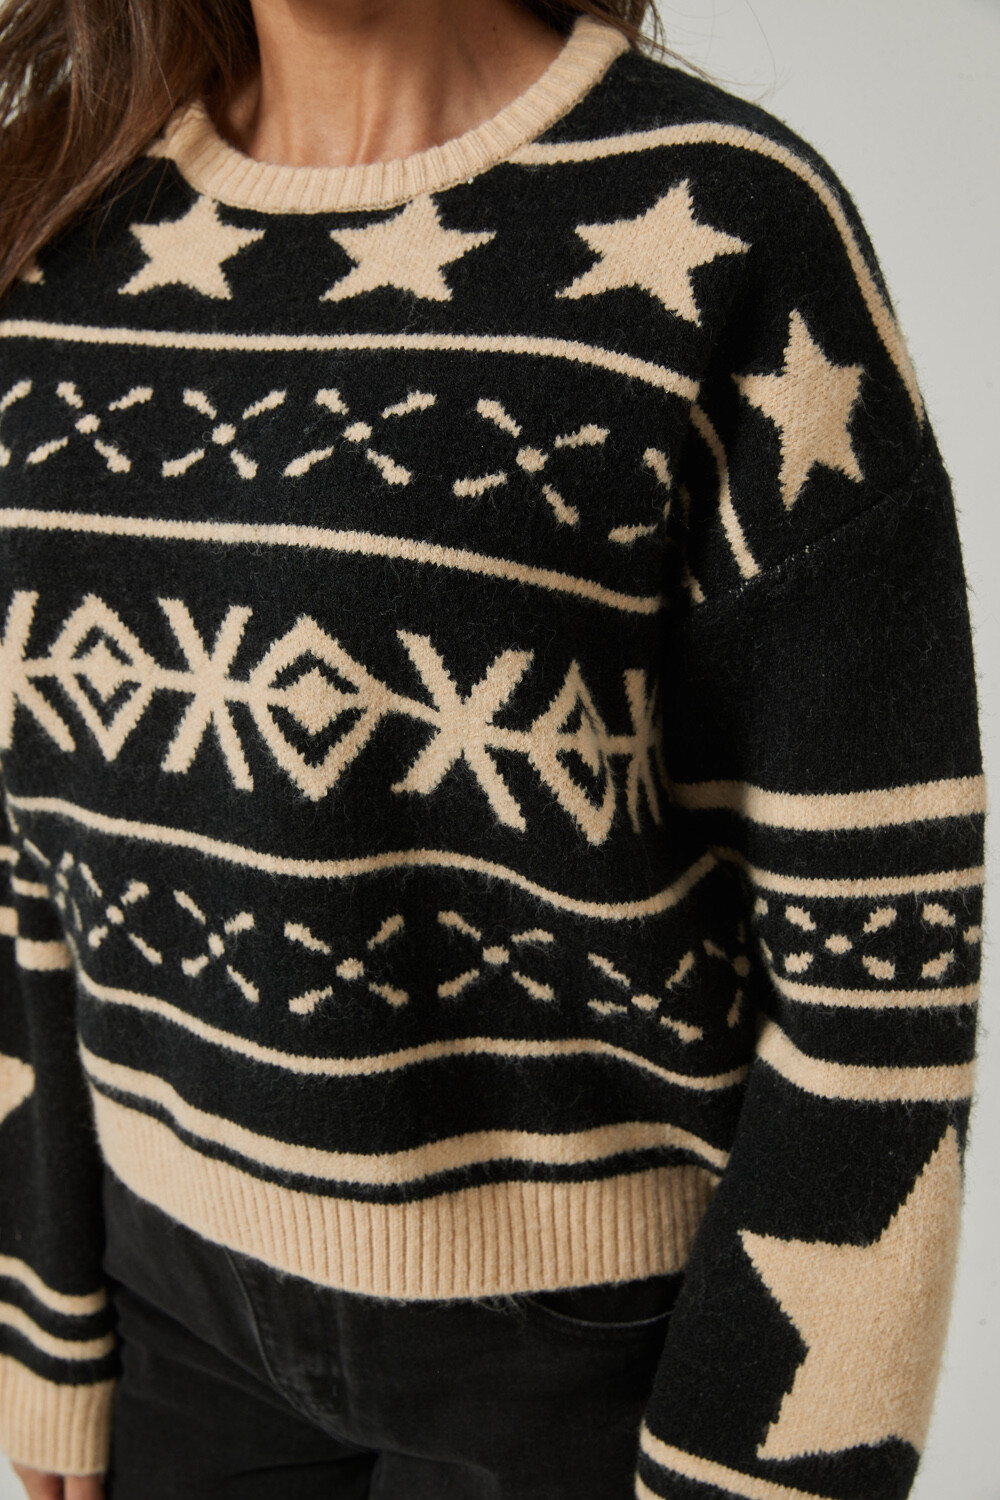 Sweater Anapaul Estampado 2